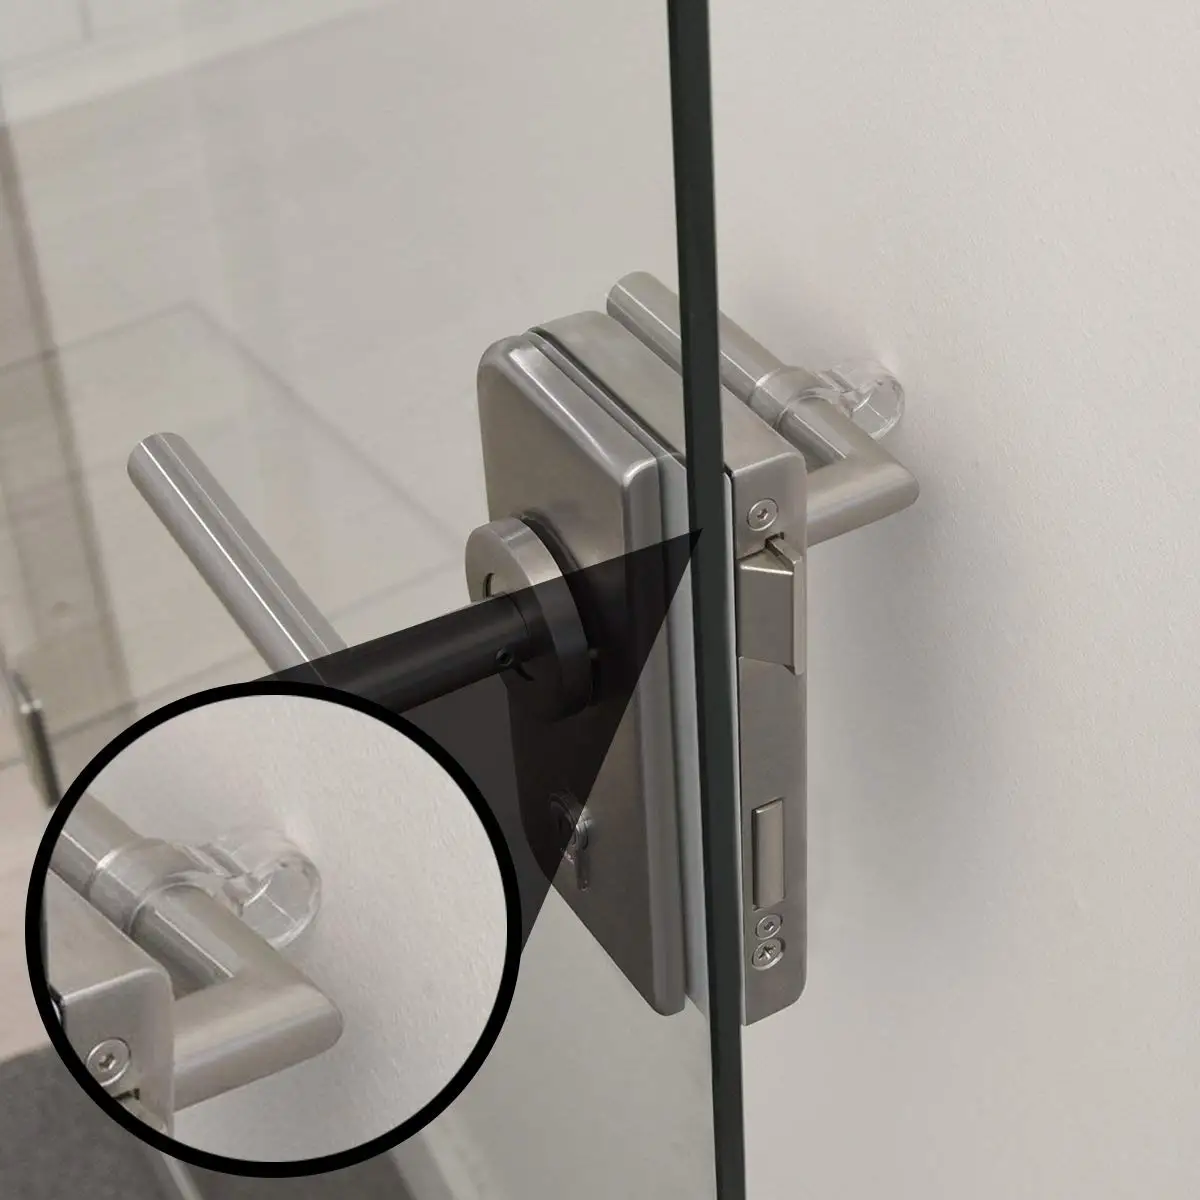 Soft PVC door stop door handle protection